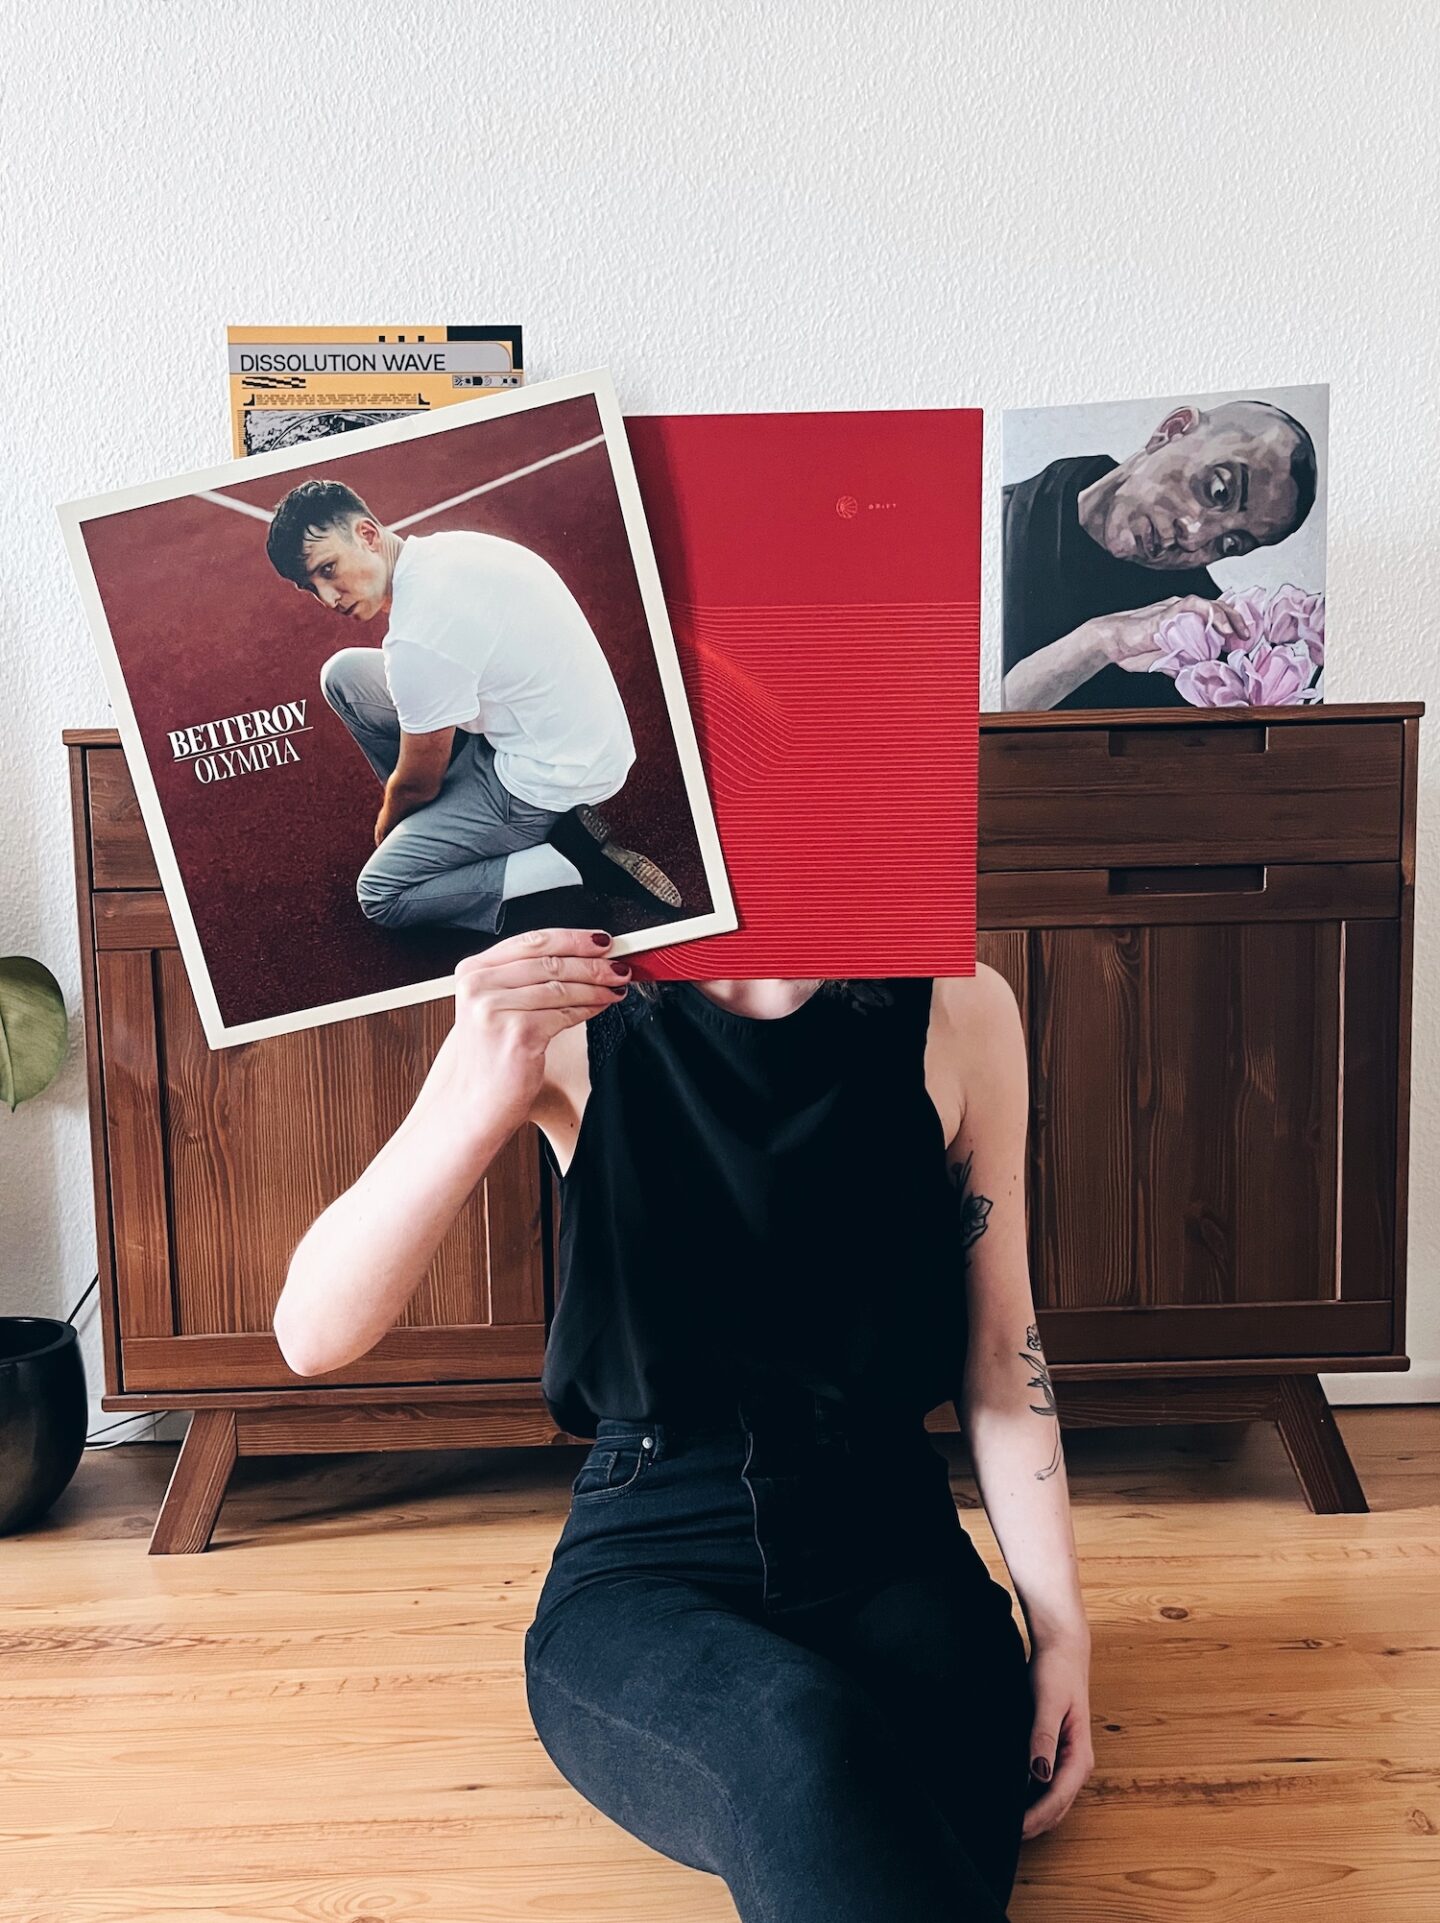 2022 Musik Rückblick Symbolbild mit Vinyl-Schallplatten von Betterov, Pianos Become The Teeth, Cloakroom und Birds in Row